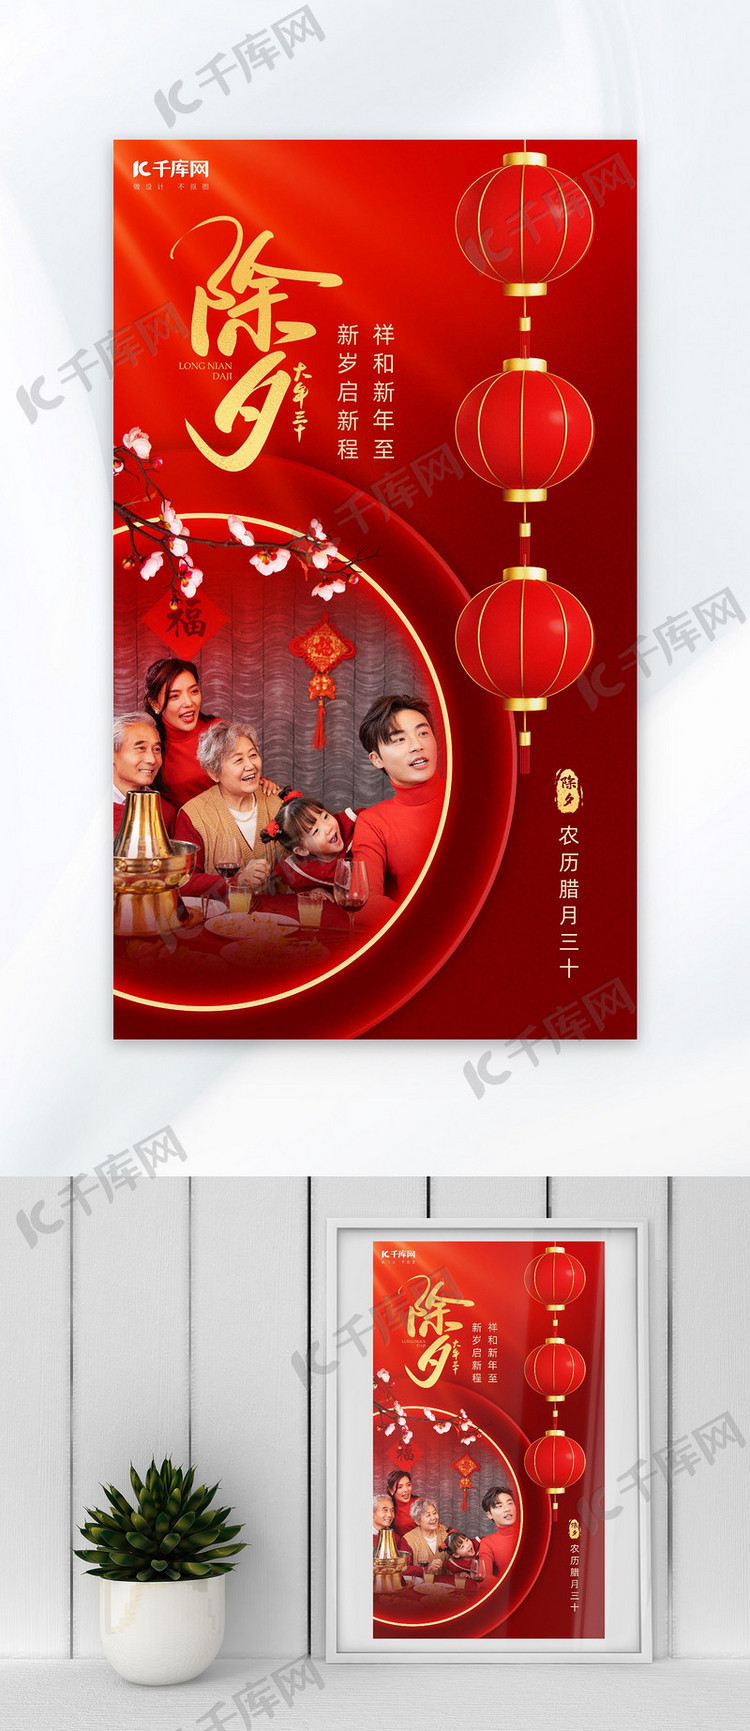 除夕灯笼全家人红金色中国风广告宣传海报PSD模板